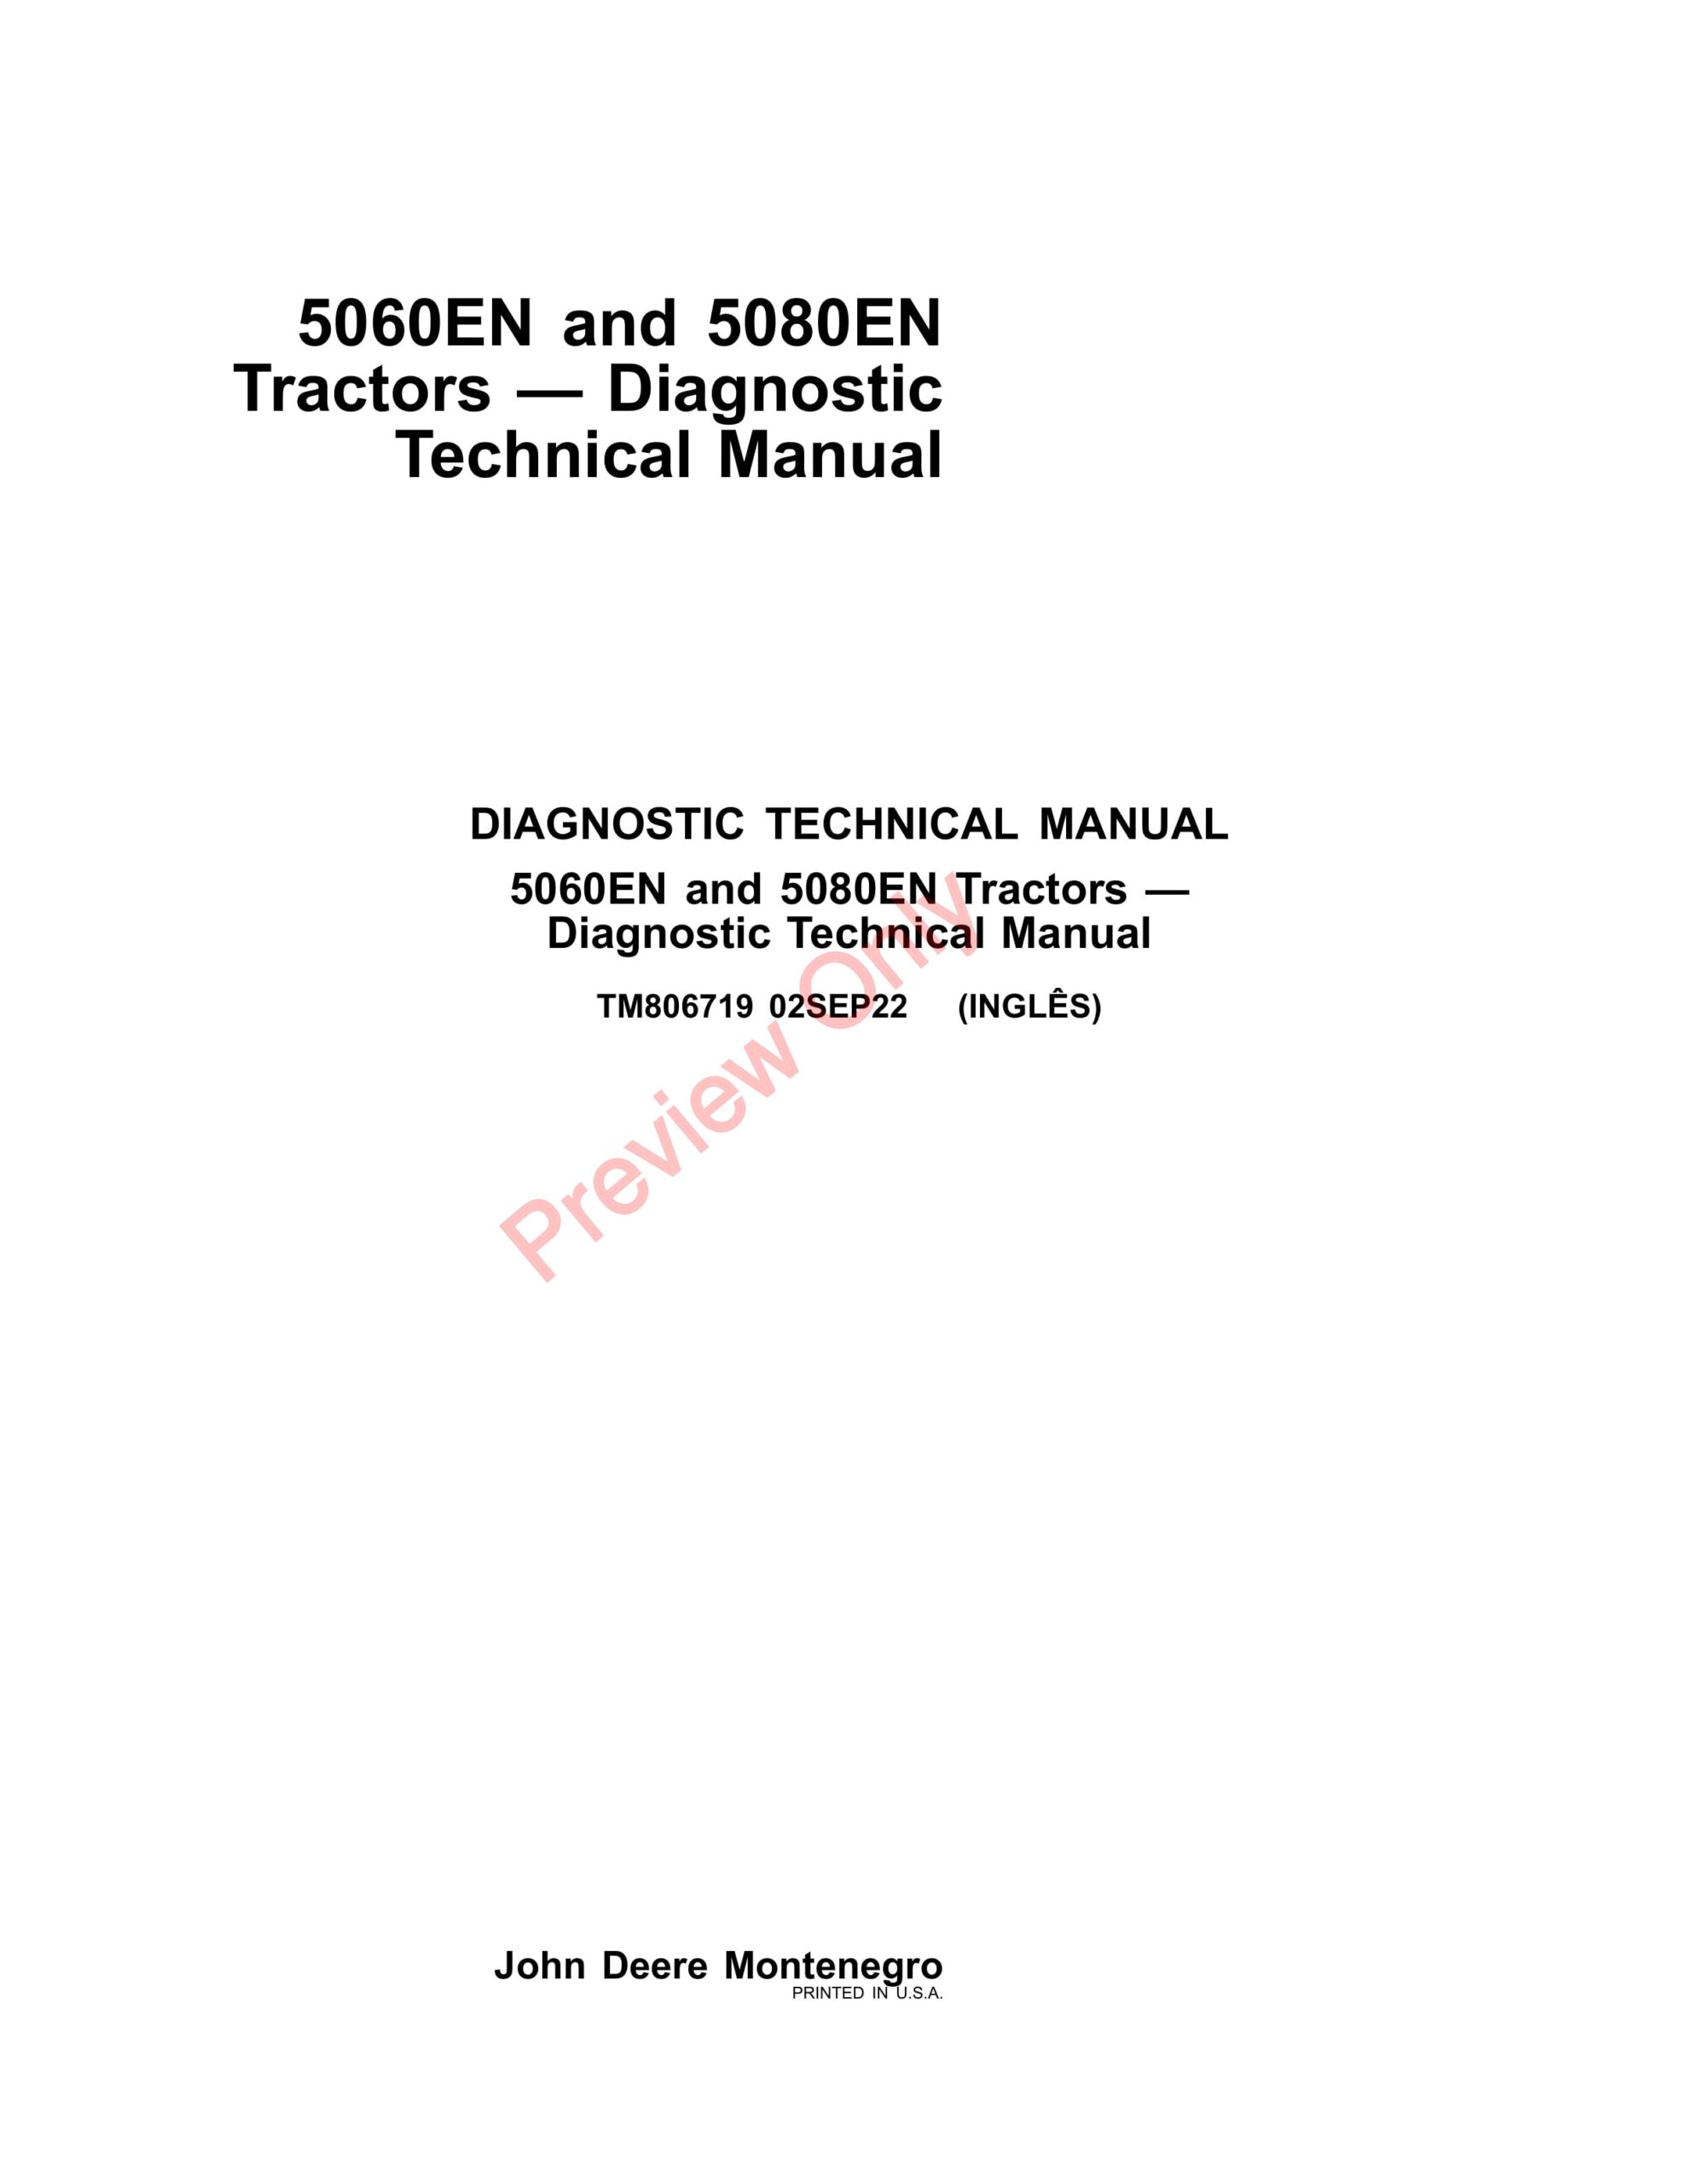 John Deere 5060EN and 5080EN Tractors Diagnostic Technical Manual TM806719 02SEP22-1